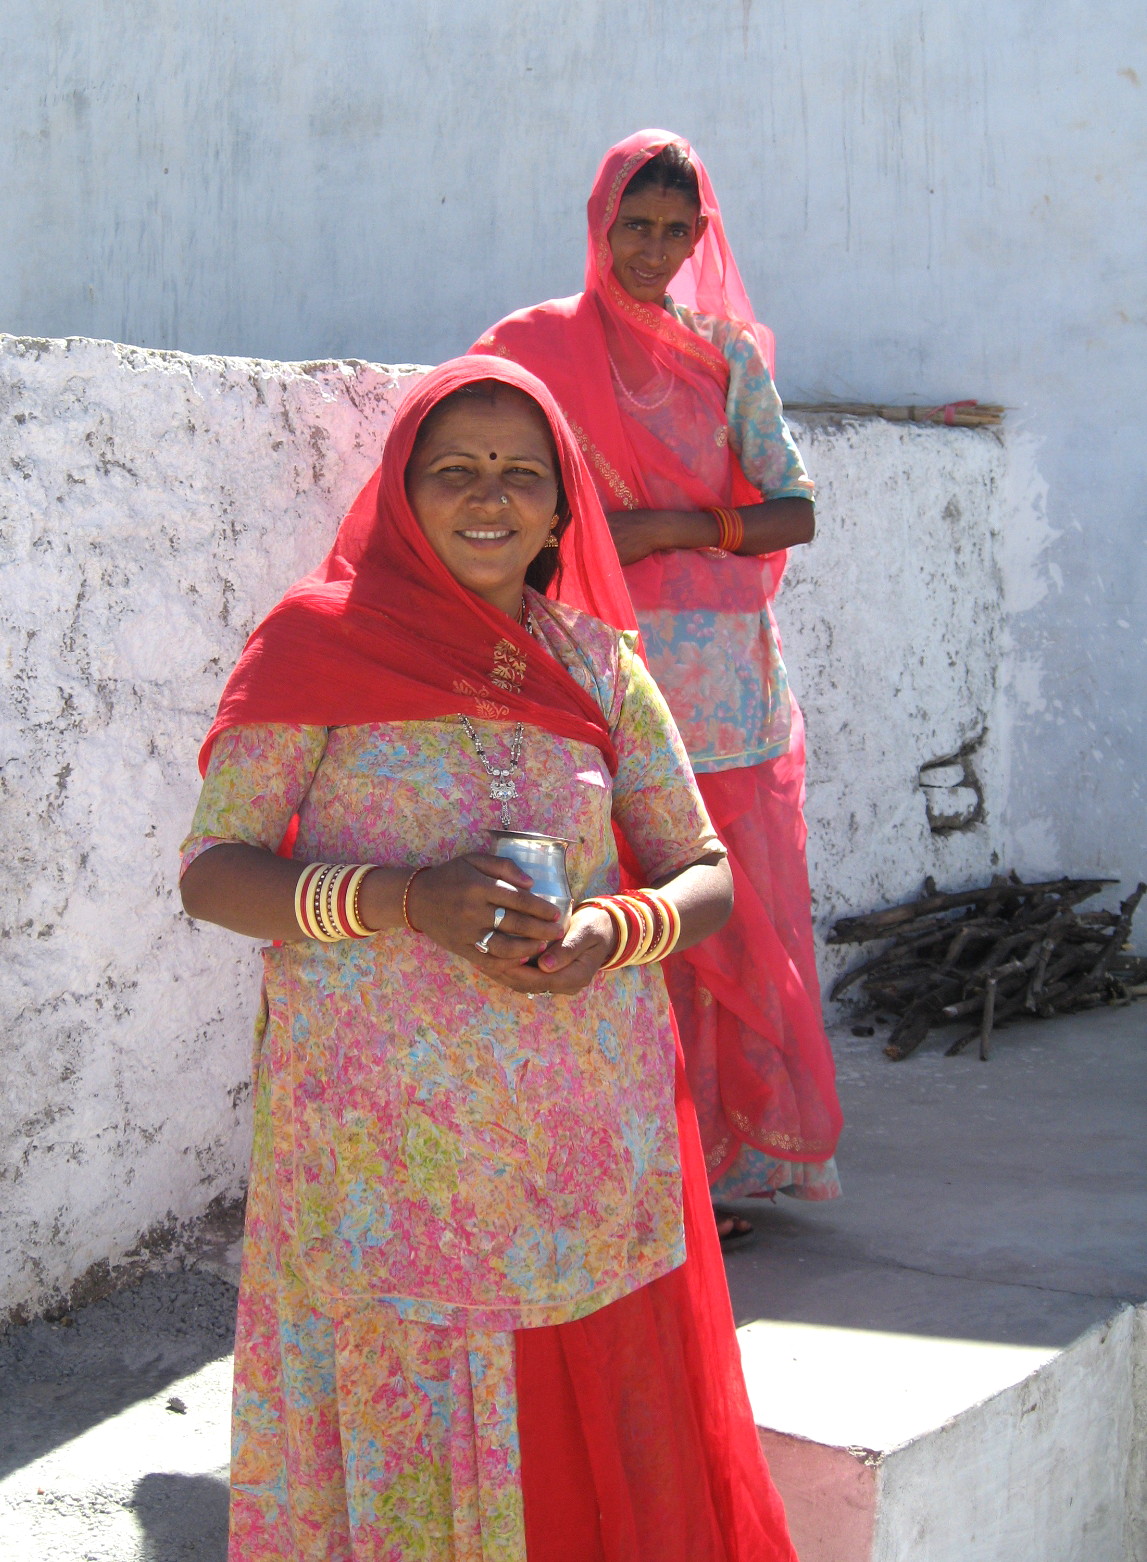 Village woman. Женщины в деревне Индии. Village women.